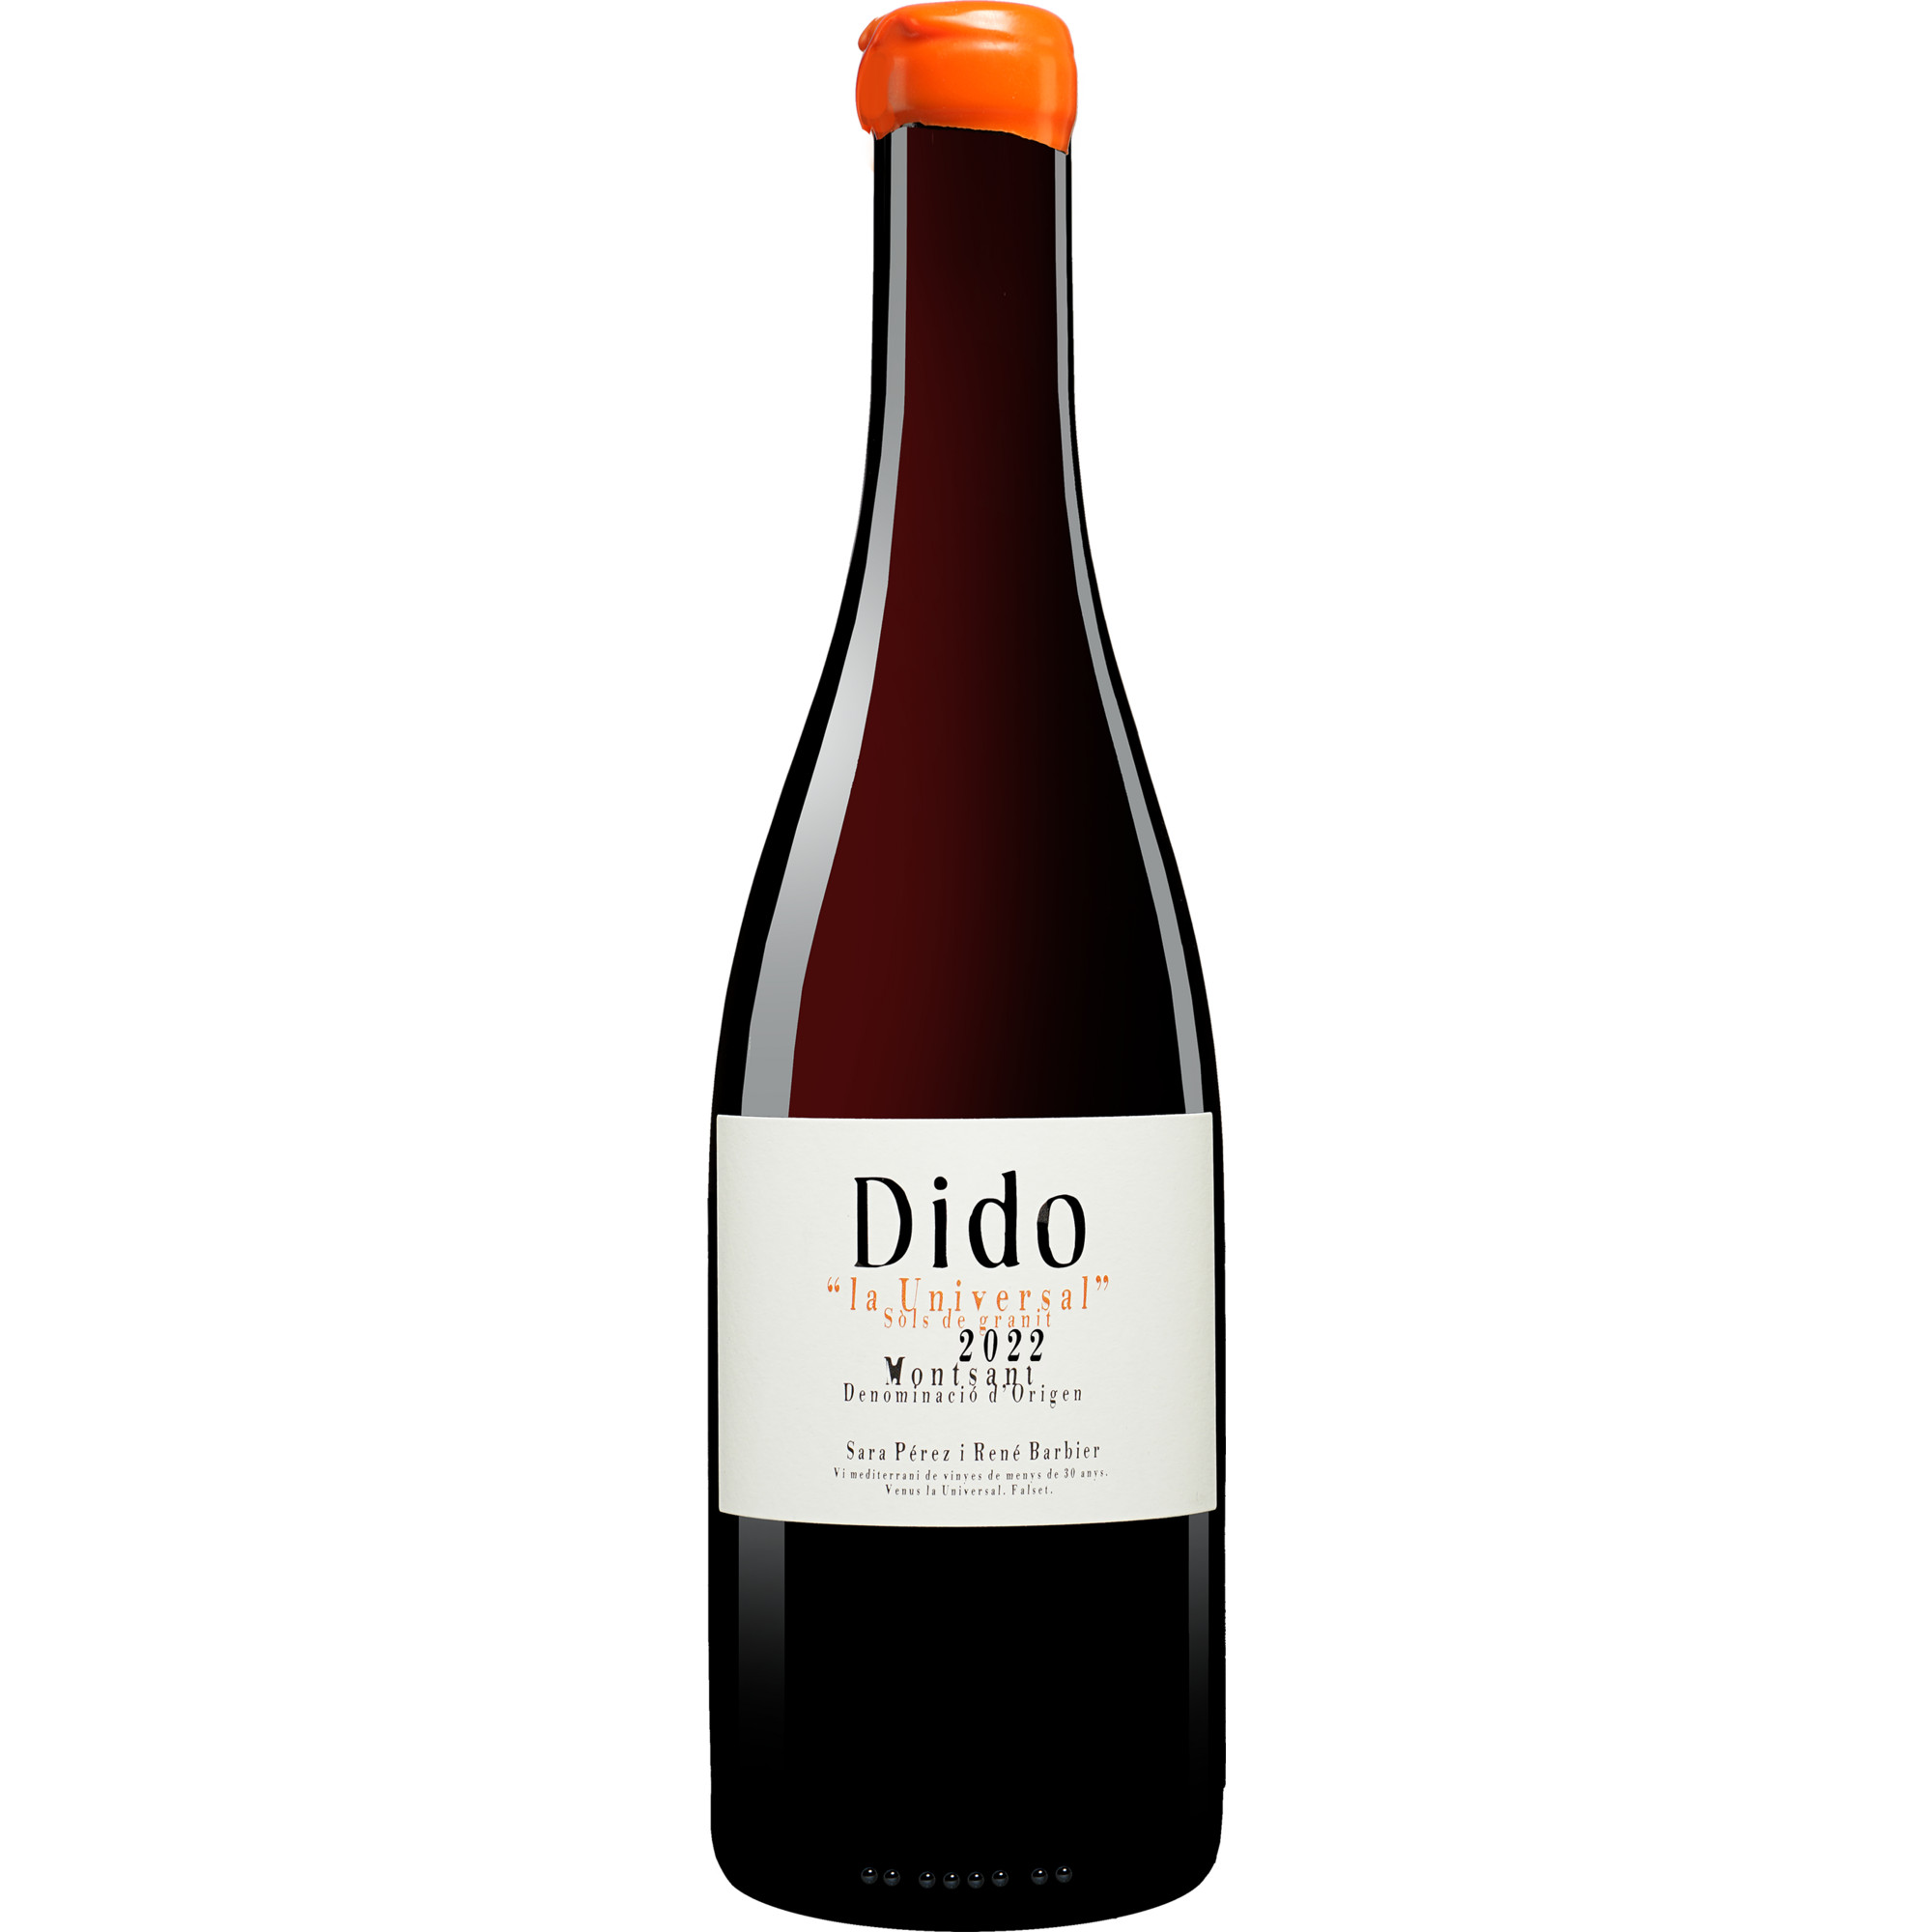 Image of Dido Negre 2022 0.75L 13.5% Vol. Rotwein Trocken aus Spanien